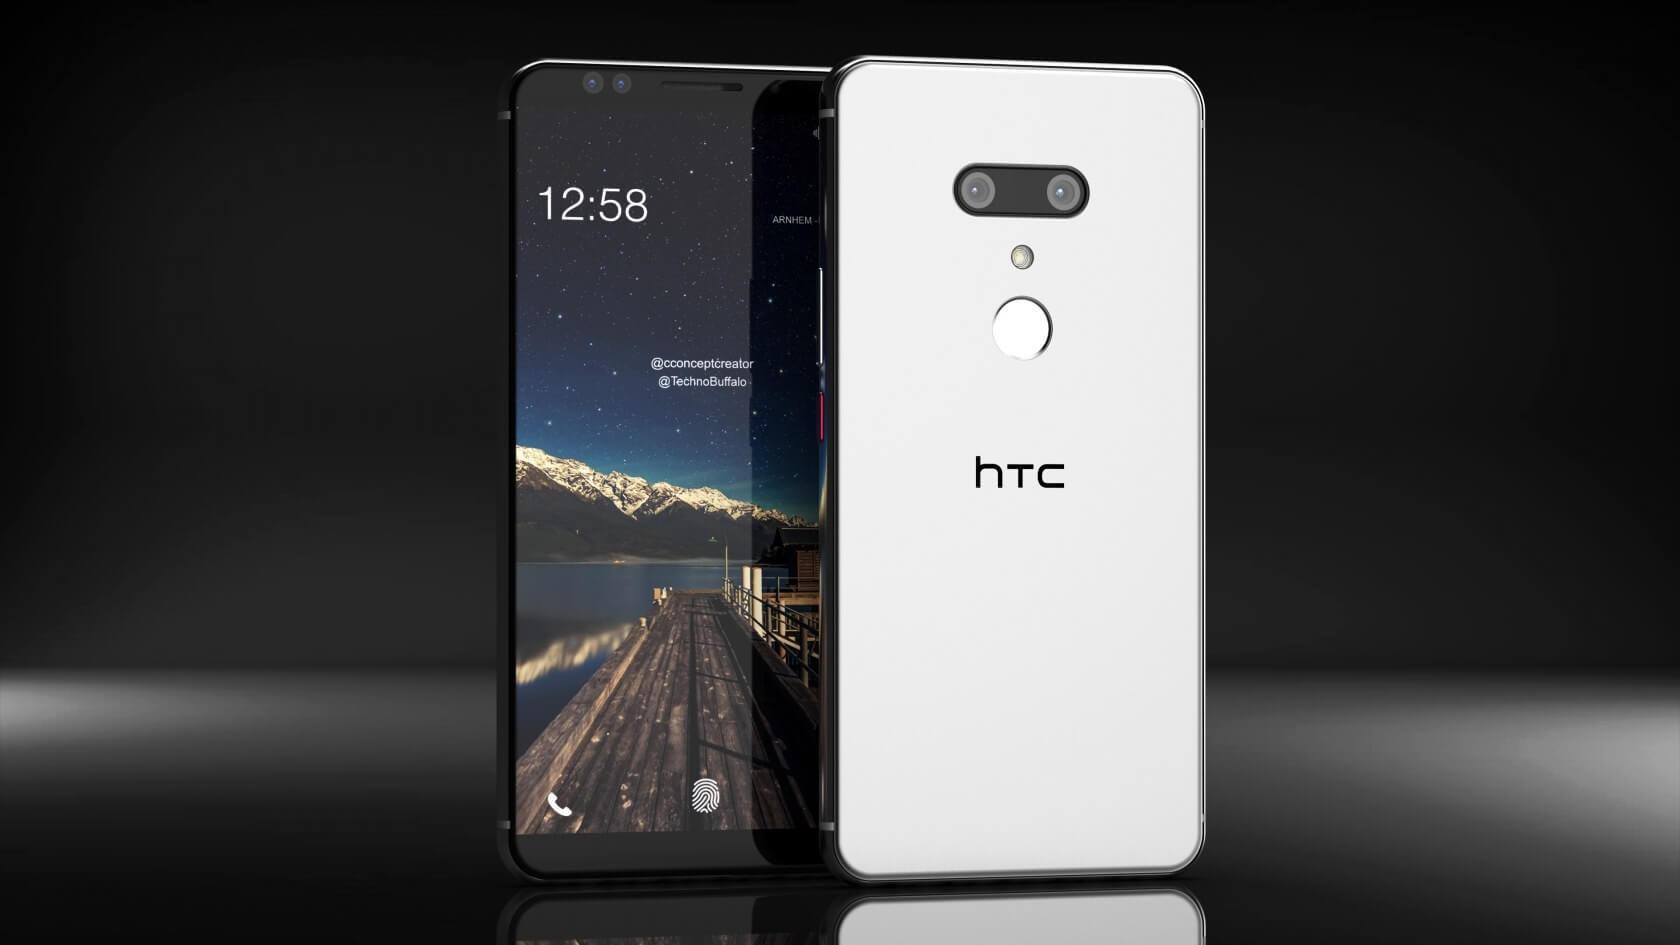 HTC U12+ स्मार्टफोन को लाँच कर दिया गया, देखिये तस्वीरों में